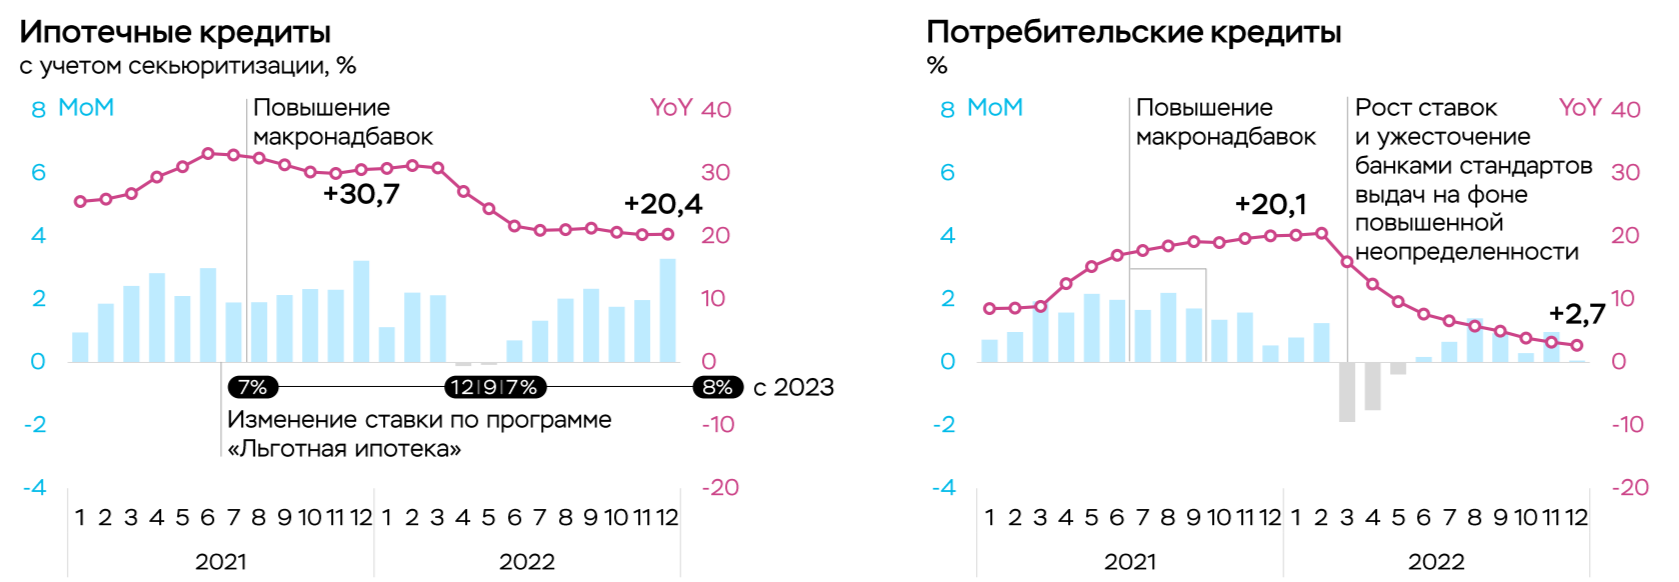 Изменение показателей ипотечных и потребительских кредитов в банковском секторе РФ в 2021-2022 годах